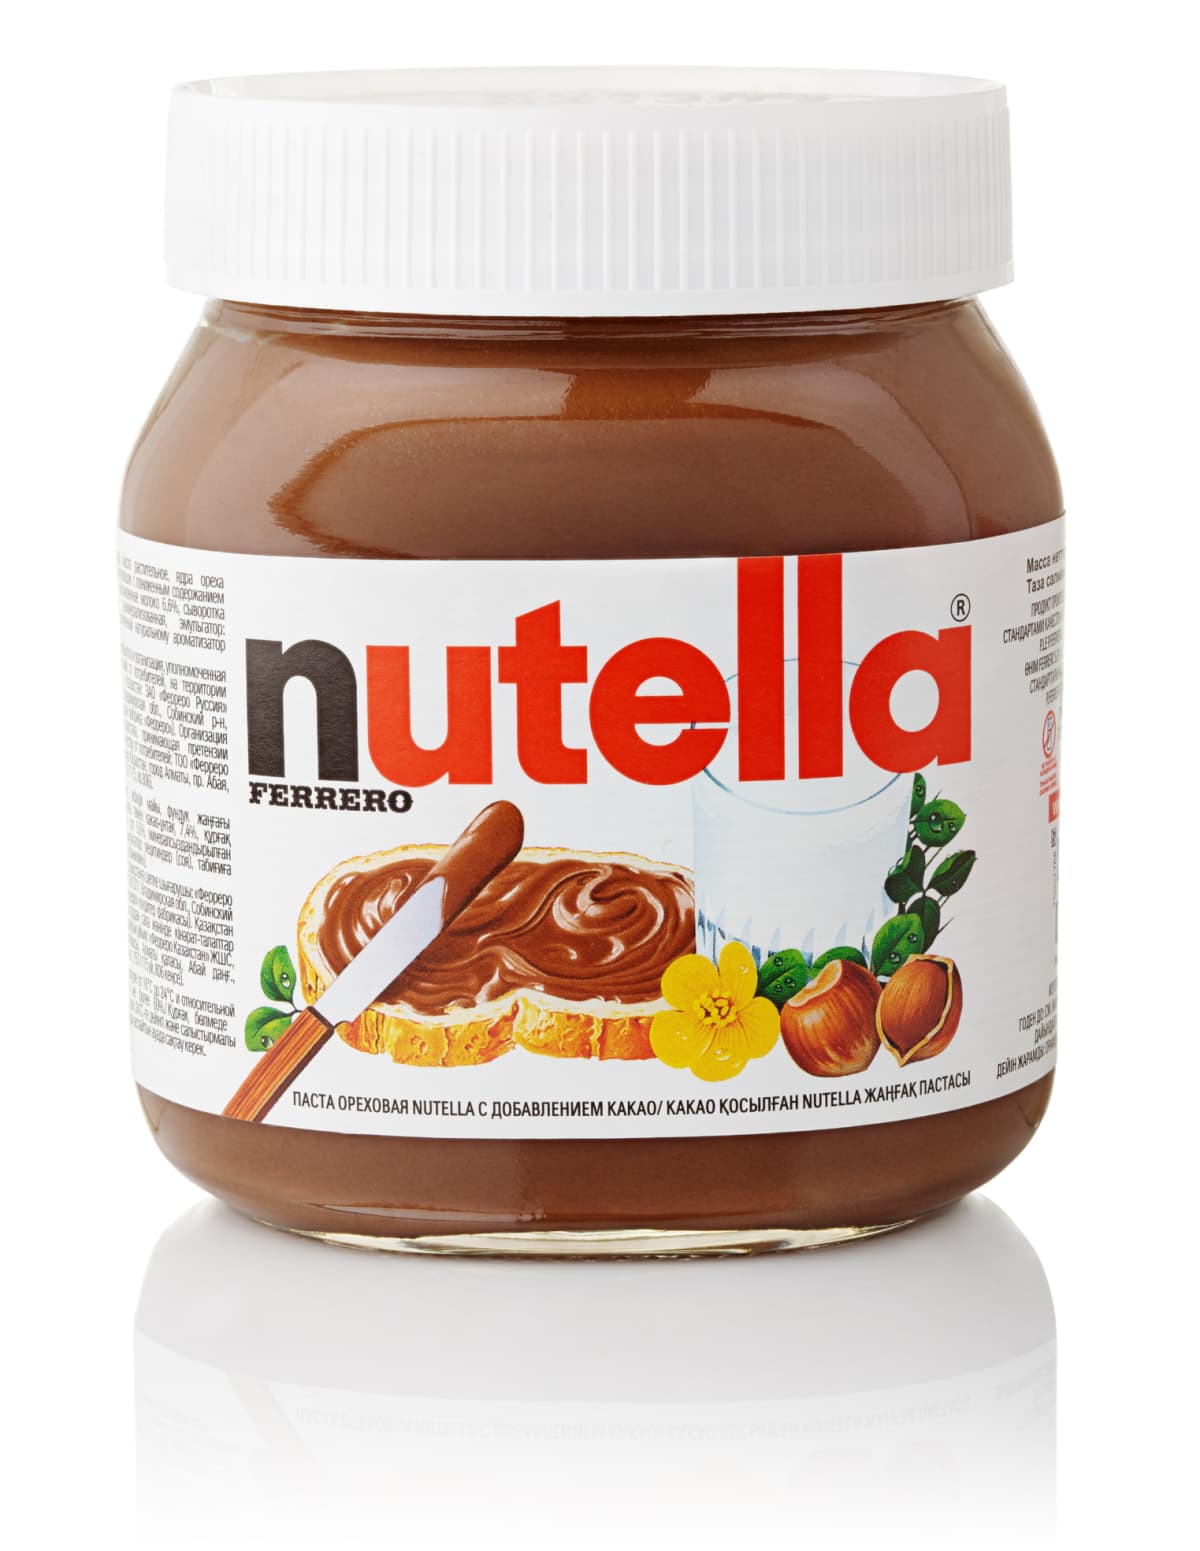 A jar of Nutella spread